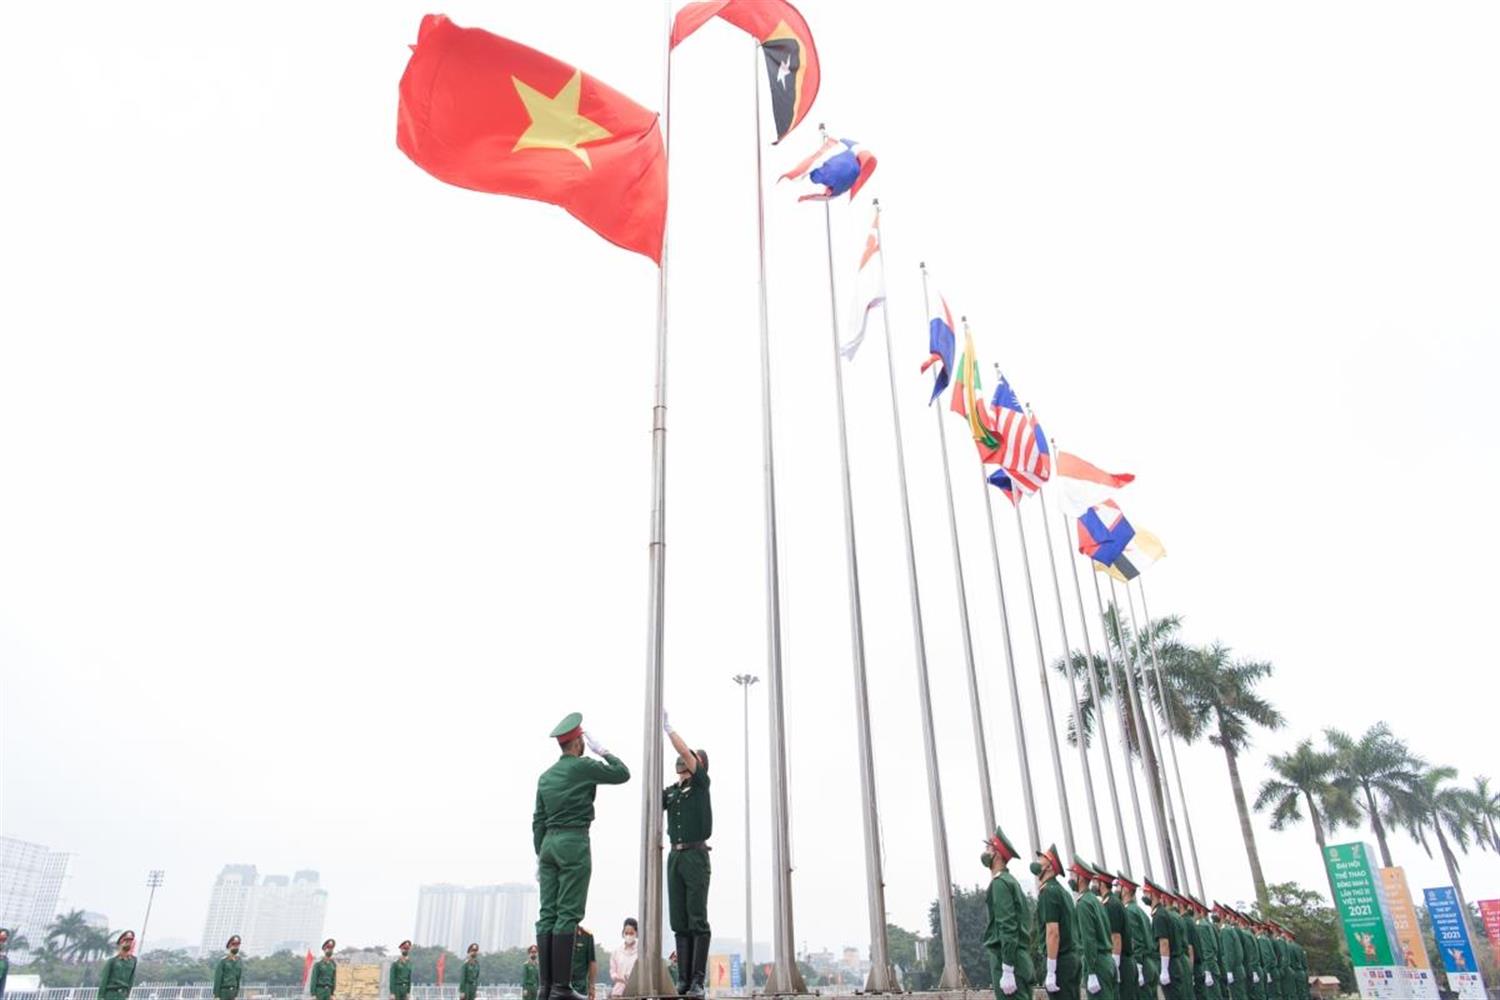 Sáng mai là ngày tuyệt vời để chúng ta chứng kiến Lễ thượng cờ cho SEA Games 31 diễn ra trang trọng tại SVĐ Mỹ Đình. Đây là cơ hội để thấy những lá cờ đại diện cho các nước tham gia mùa giải thể thao lớn nhất Đông Nam Á. Hãy cùng nhau tạo ra không khí sôi động, xem chương trình này và ủng hộ đội tuyển Việt Nam.